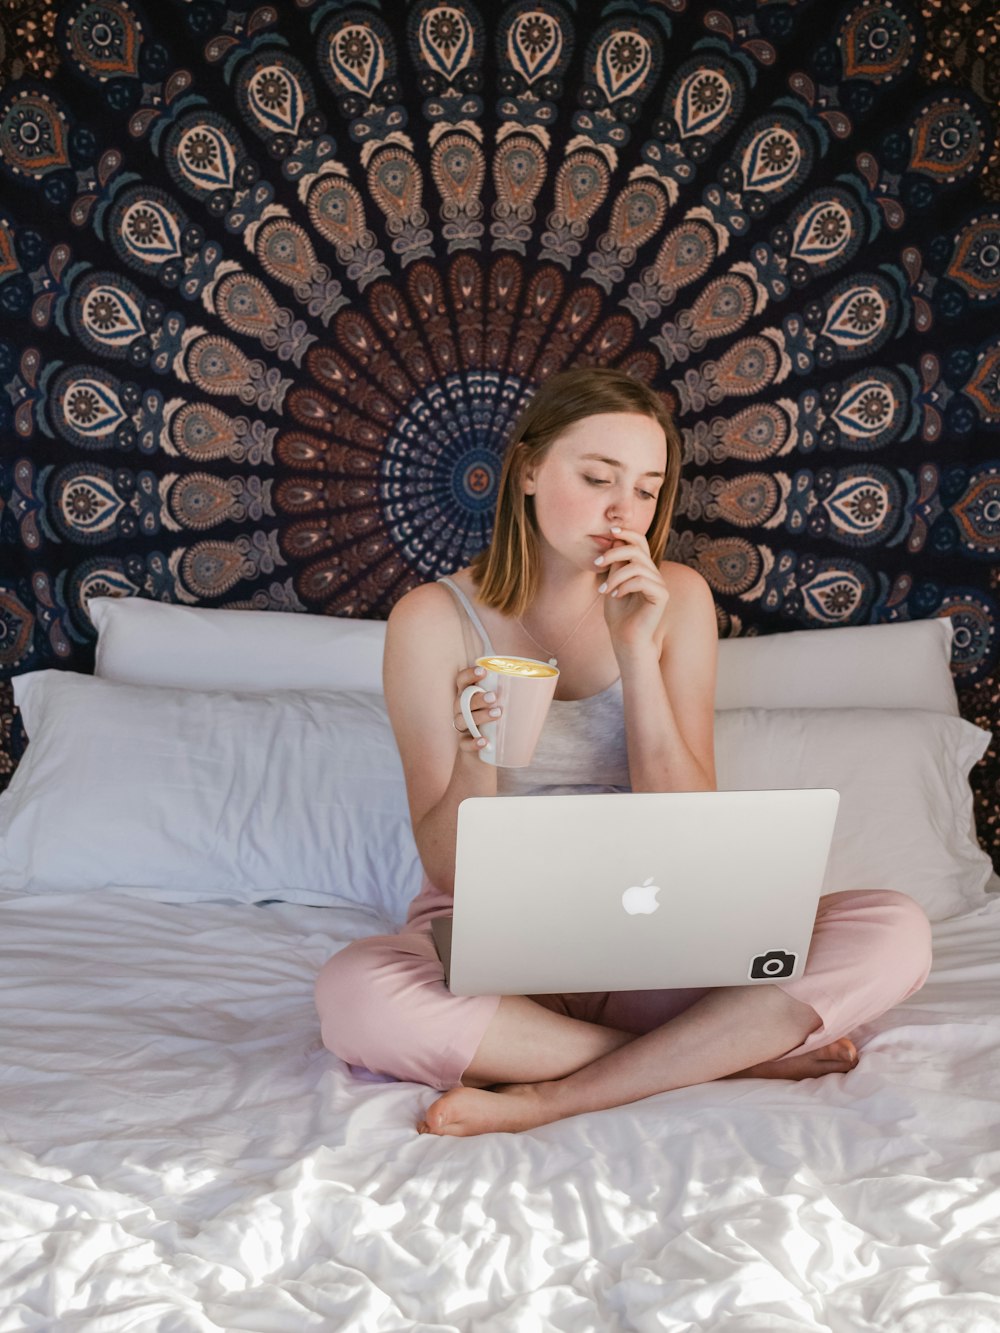 MacBookを使用し、ベッドに座っているときにマグカップを持っている女性